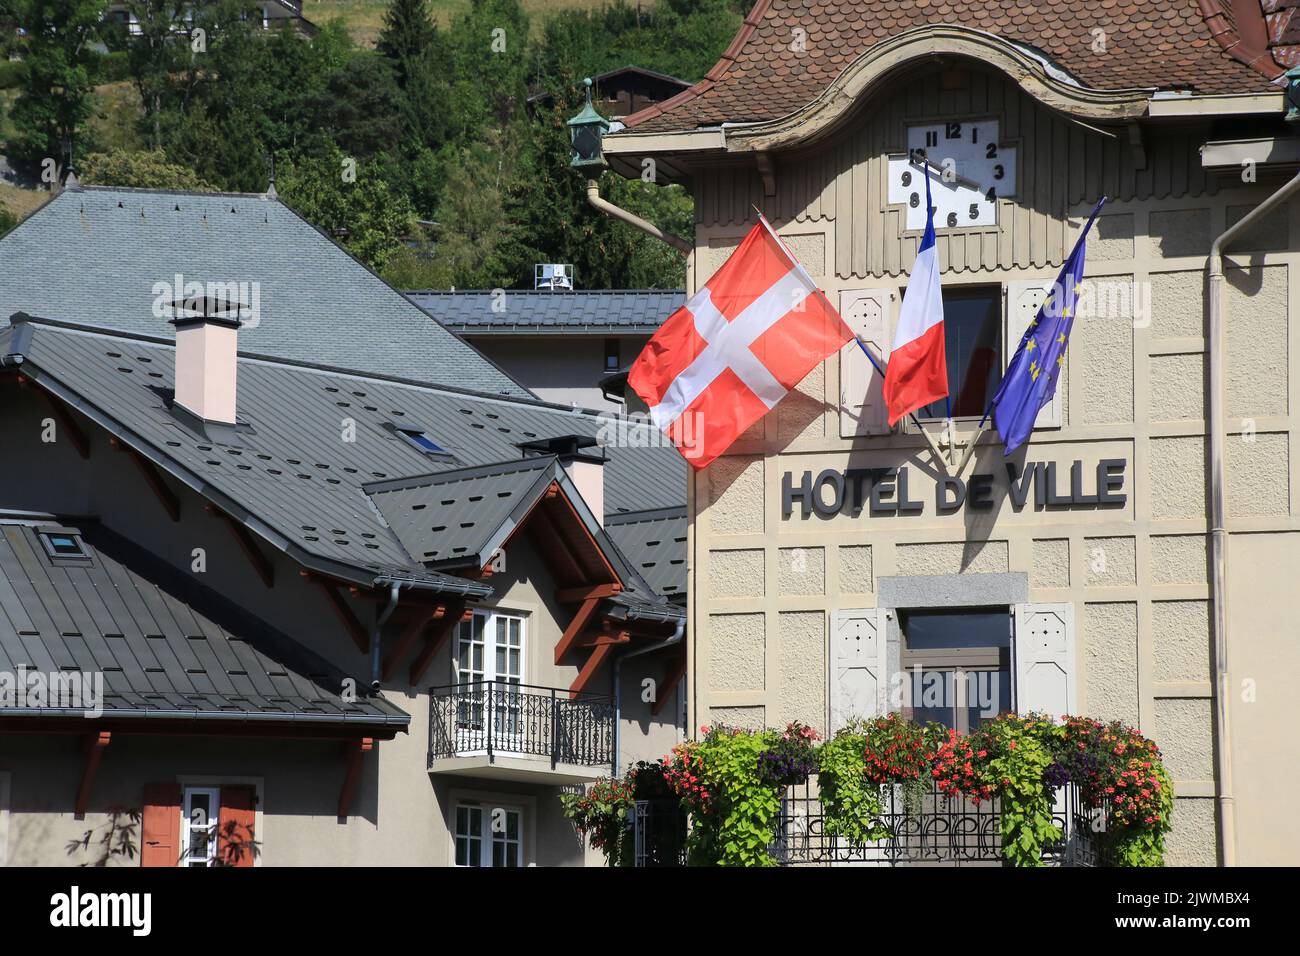 Hôtel de Ville. Drapeau de Haute-Savoie. Saint-Gervais-les-Bains. Haute-Savoie. Auvergne-Rhône-Alpes. Frankreich. Europa. Stockfoto